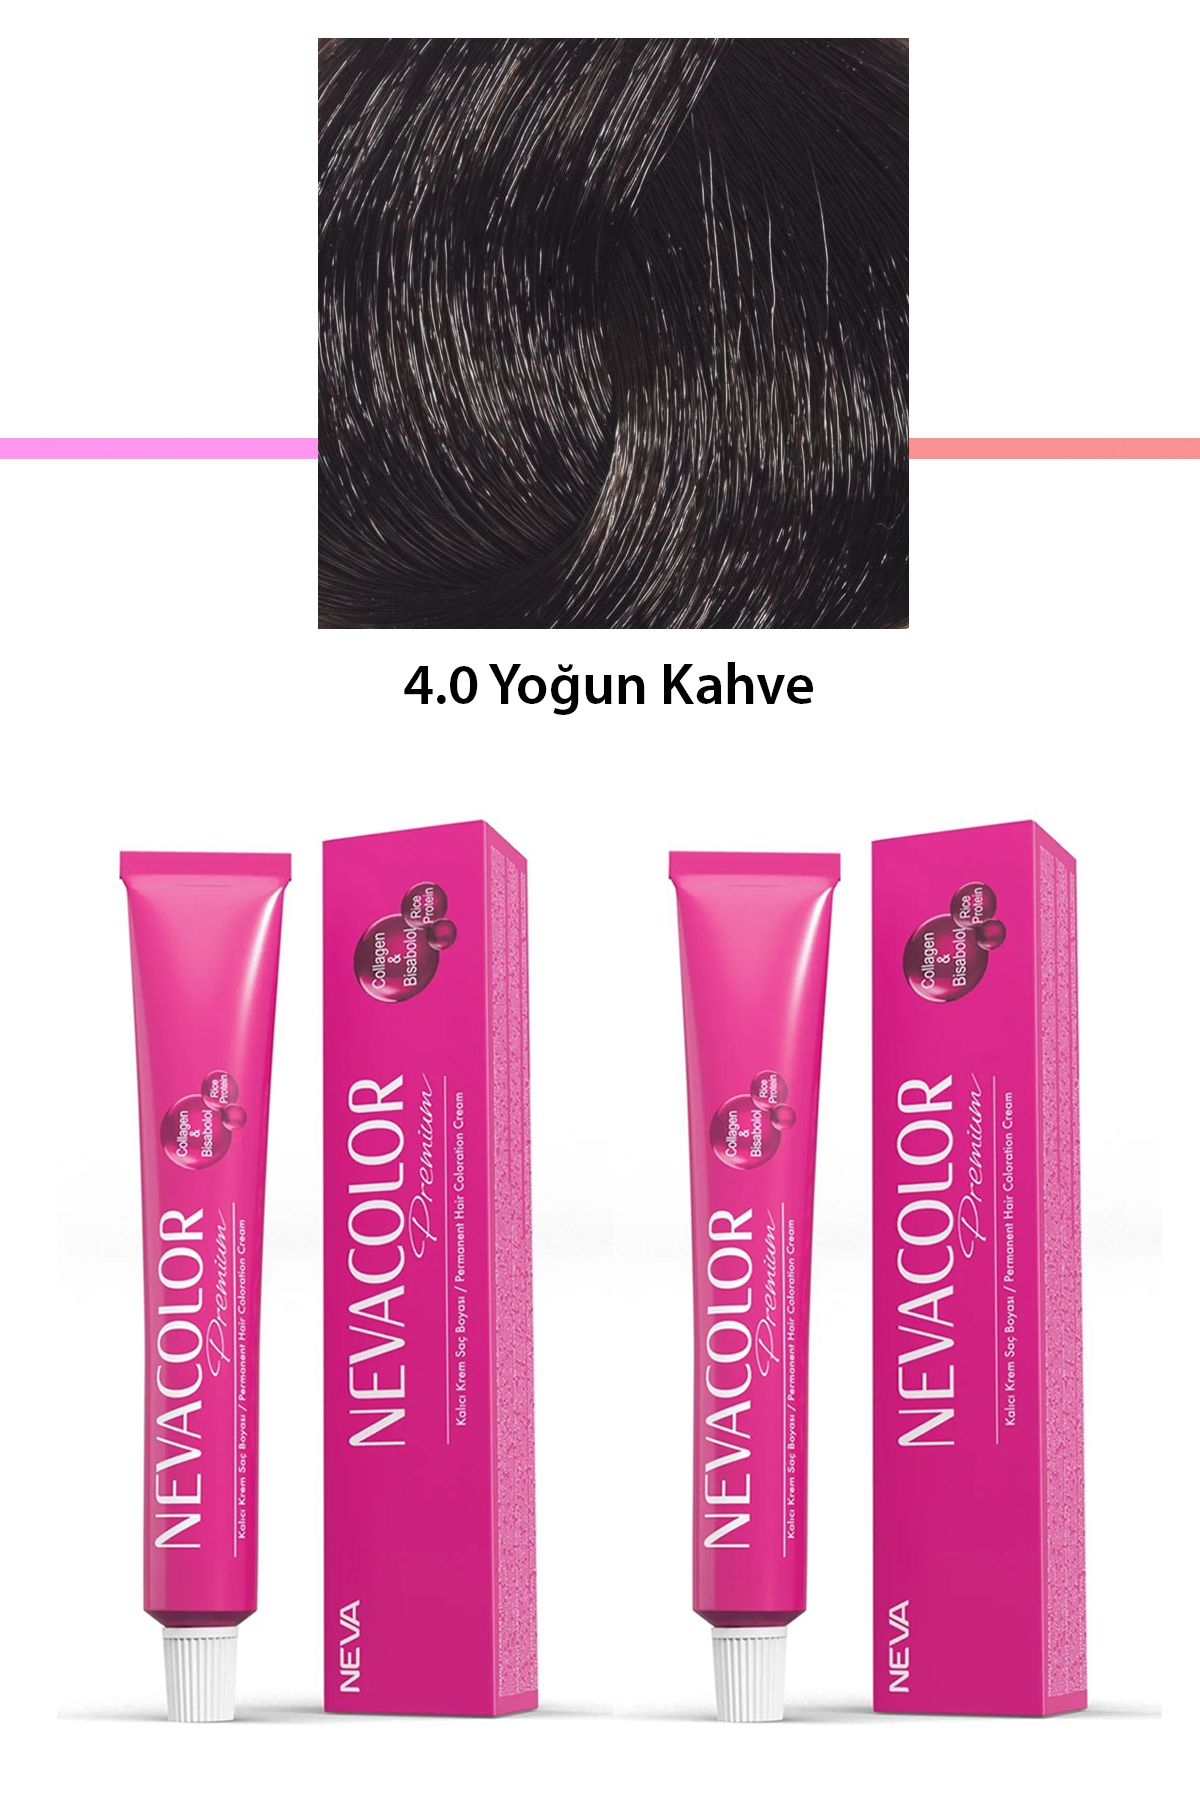 Neva Color 2 li Set Premium 4.0 Yoğun Kahve - Kalıcı Krem Saç Boyası 2 X 50 g Tüp